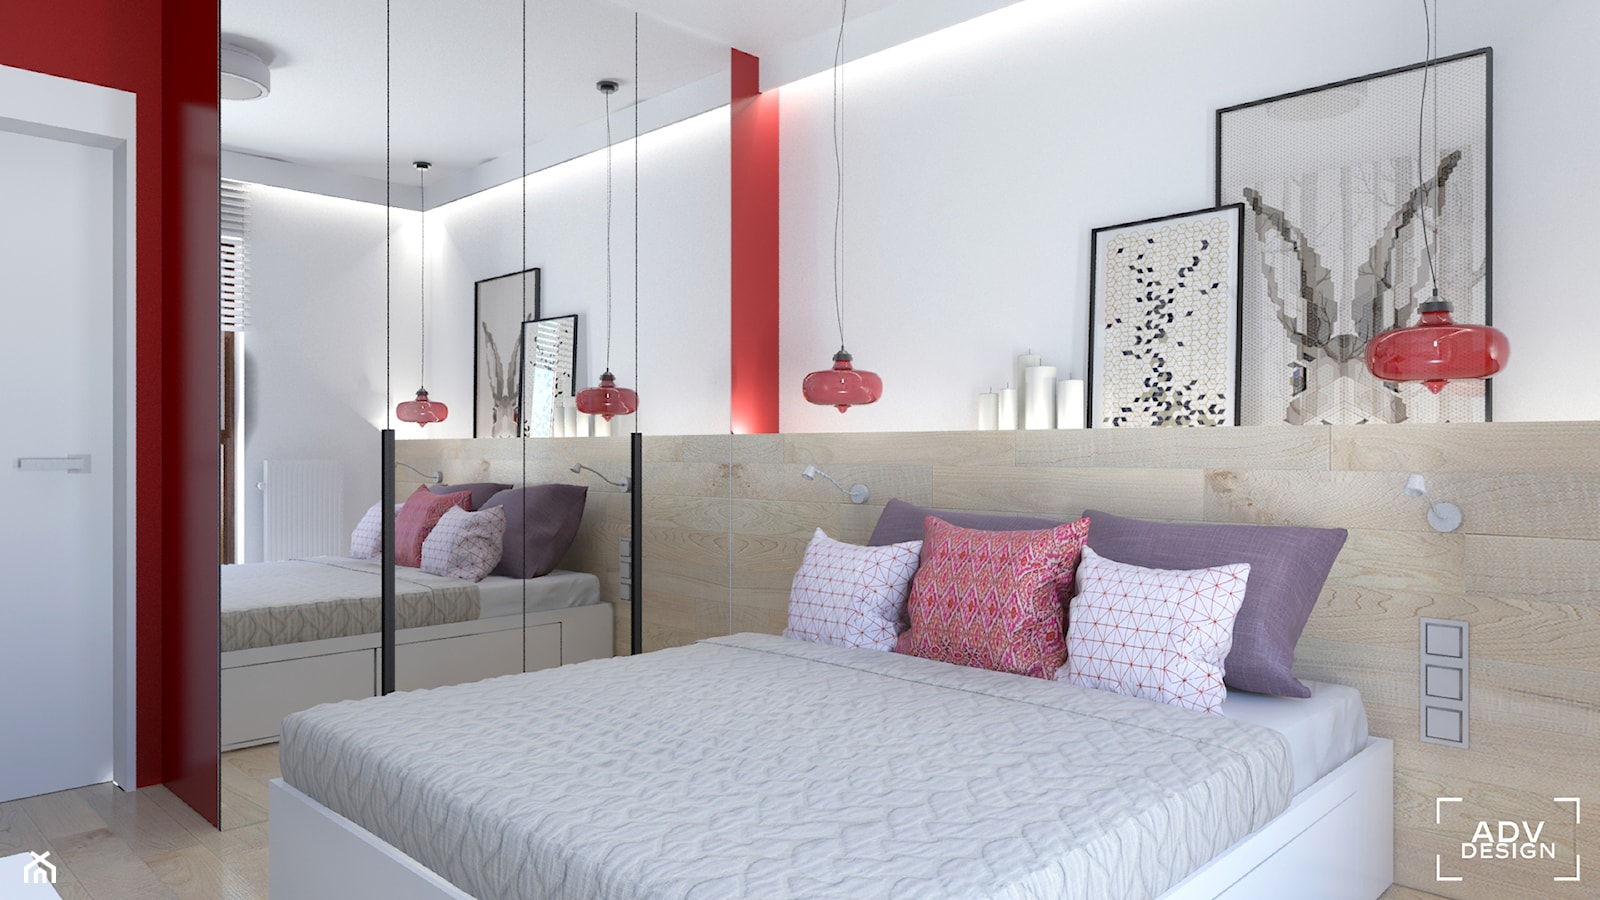 76 m2 - Sypialnia, styl nowoczesny - zdjęcie od ADV Design - Homebook